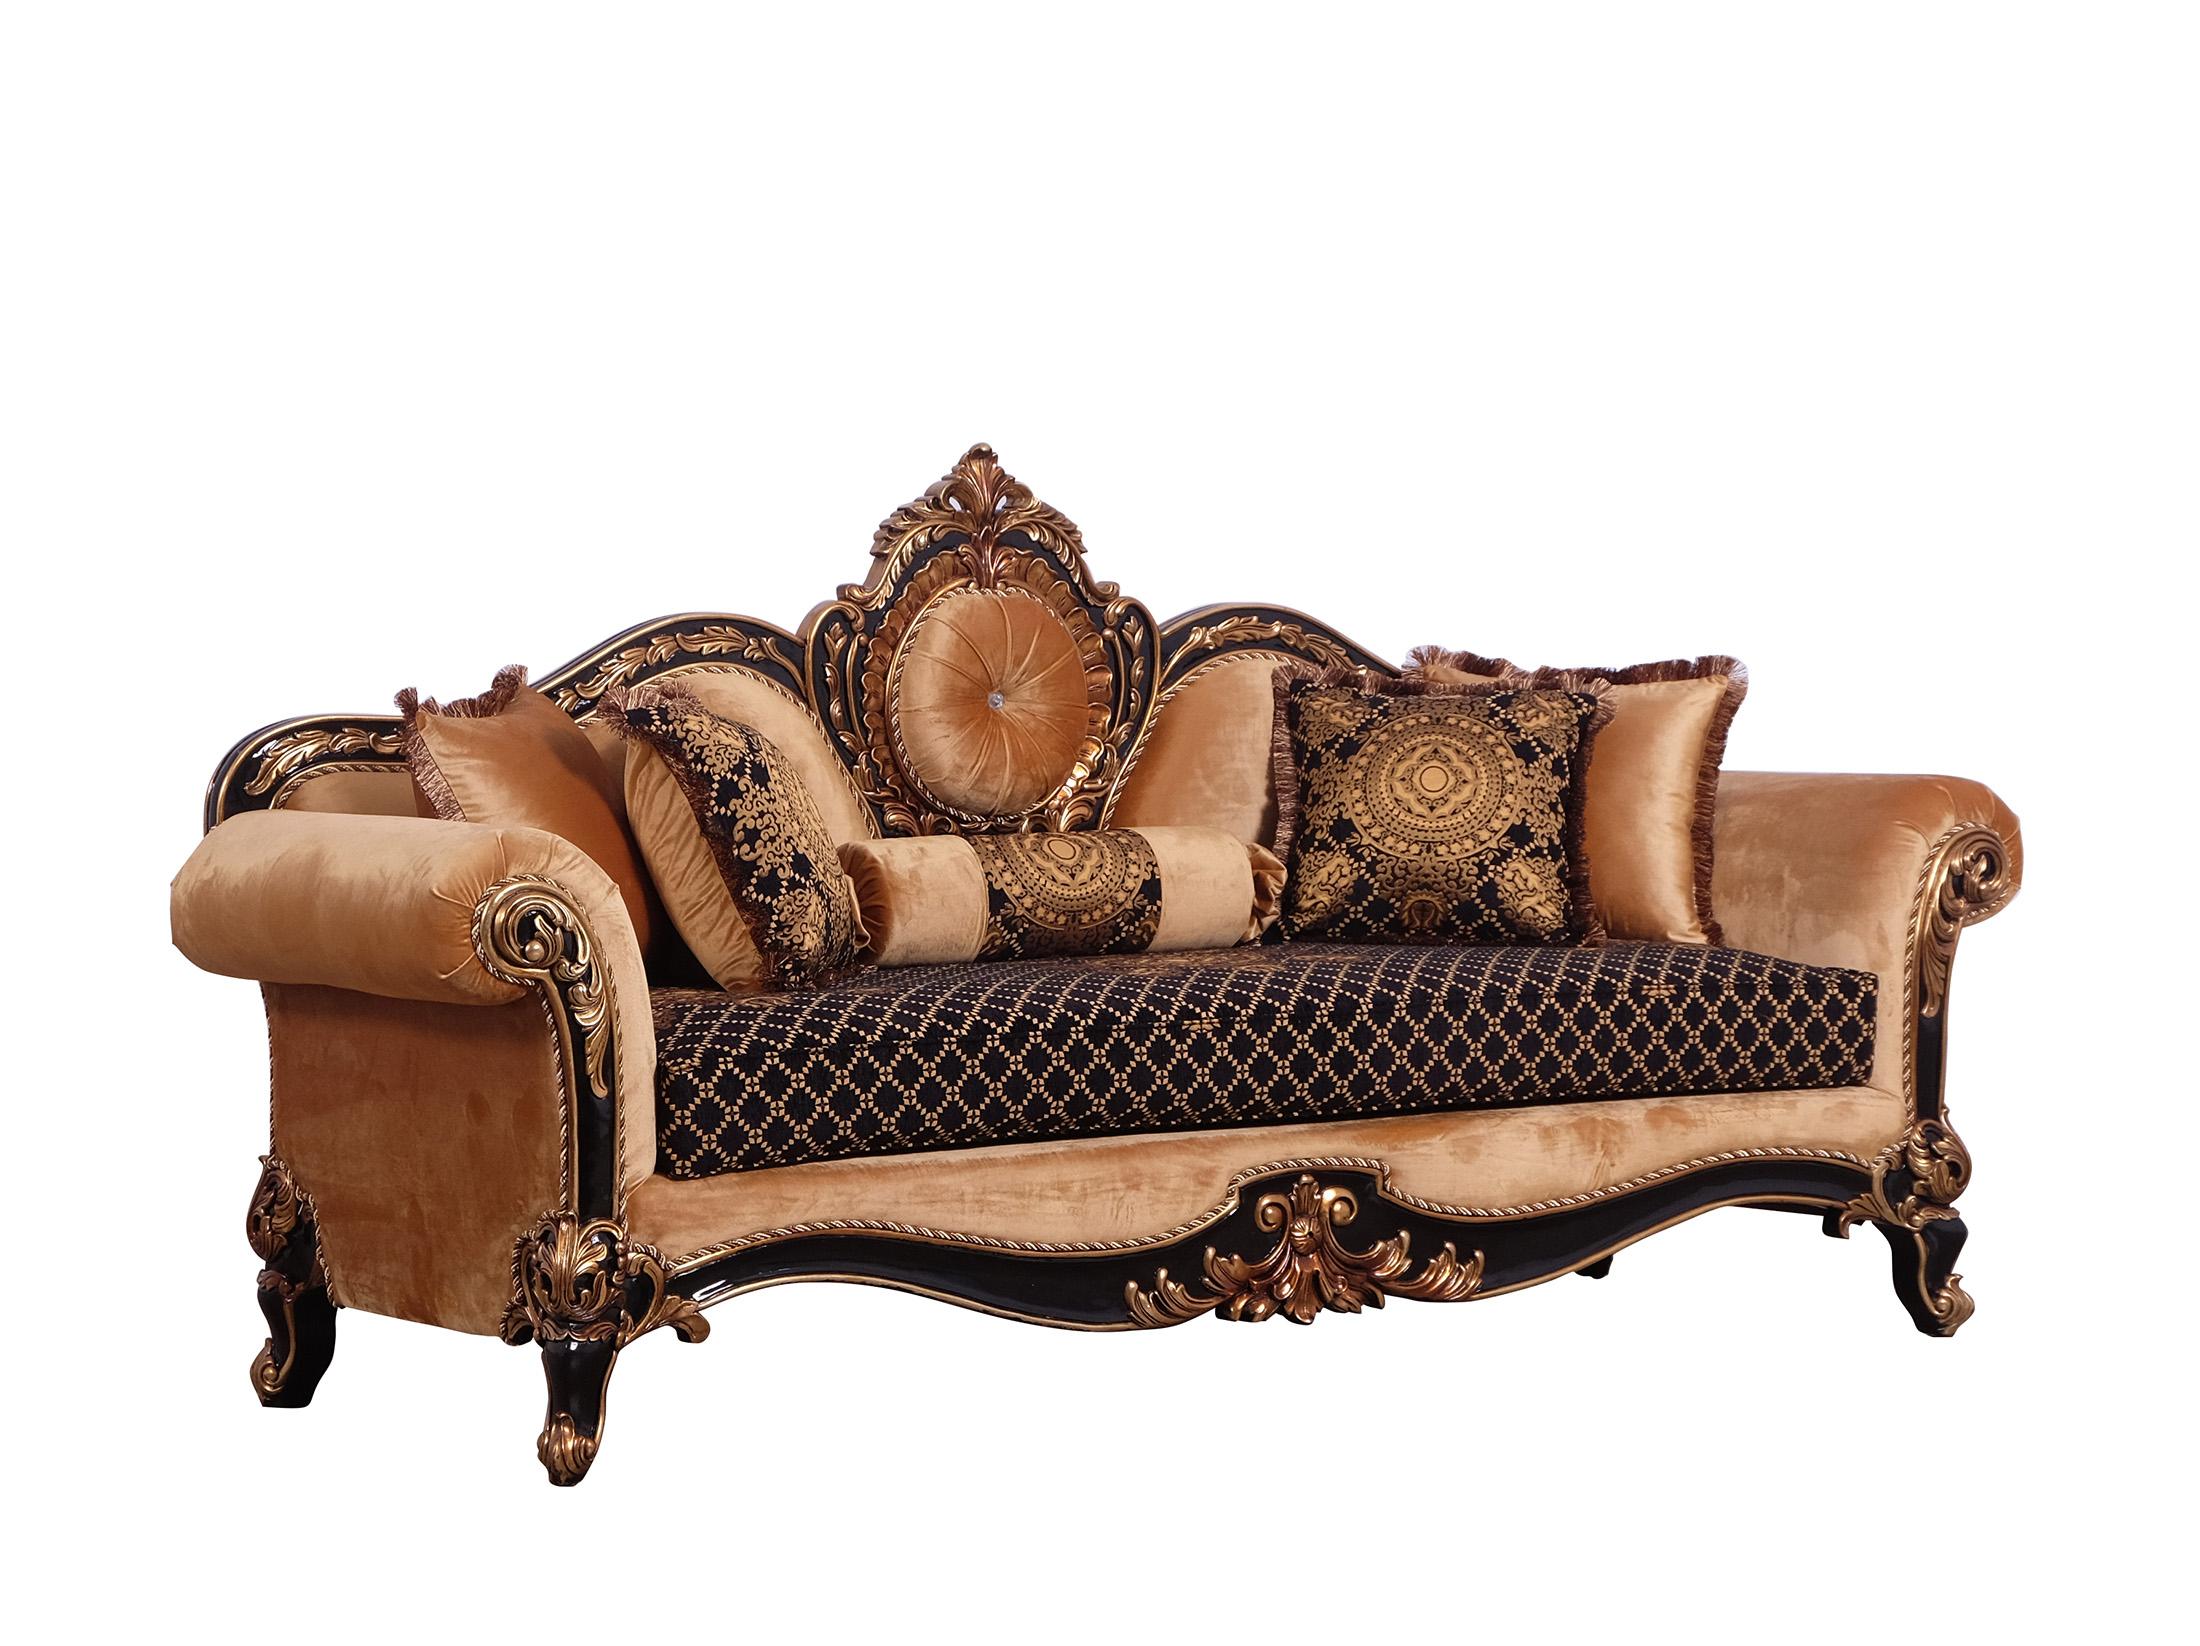 Classic, Traditional Sofa RAFFAELLO 41024-S in Antique, Silver, Gold, Black Fabric